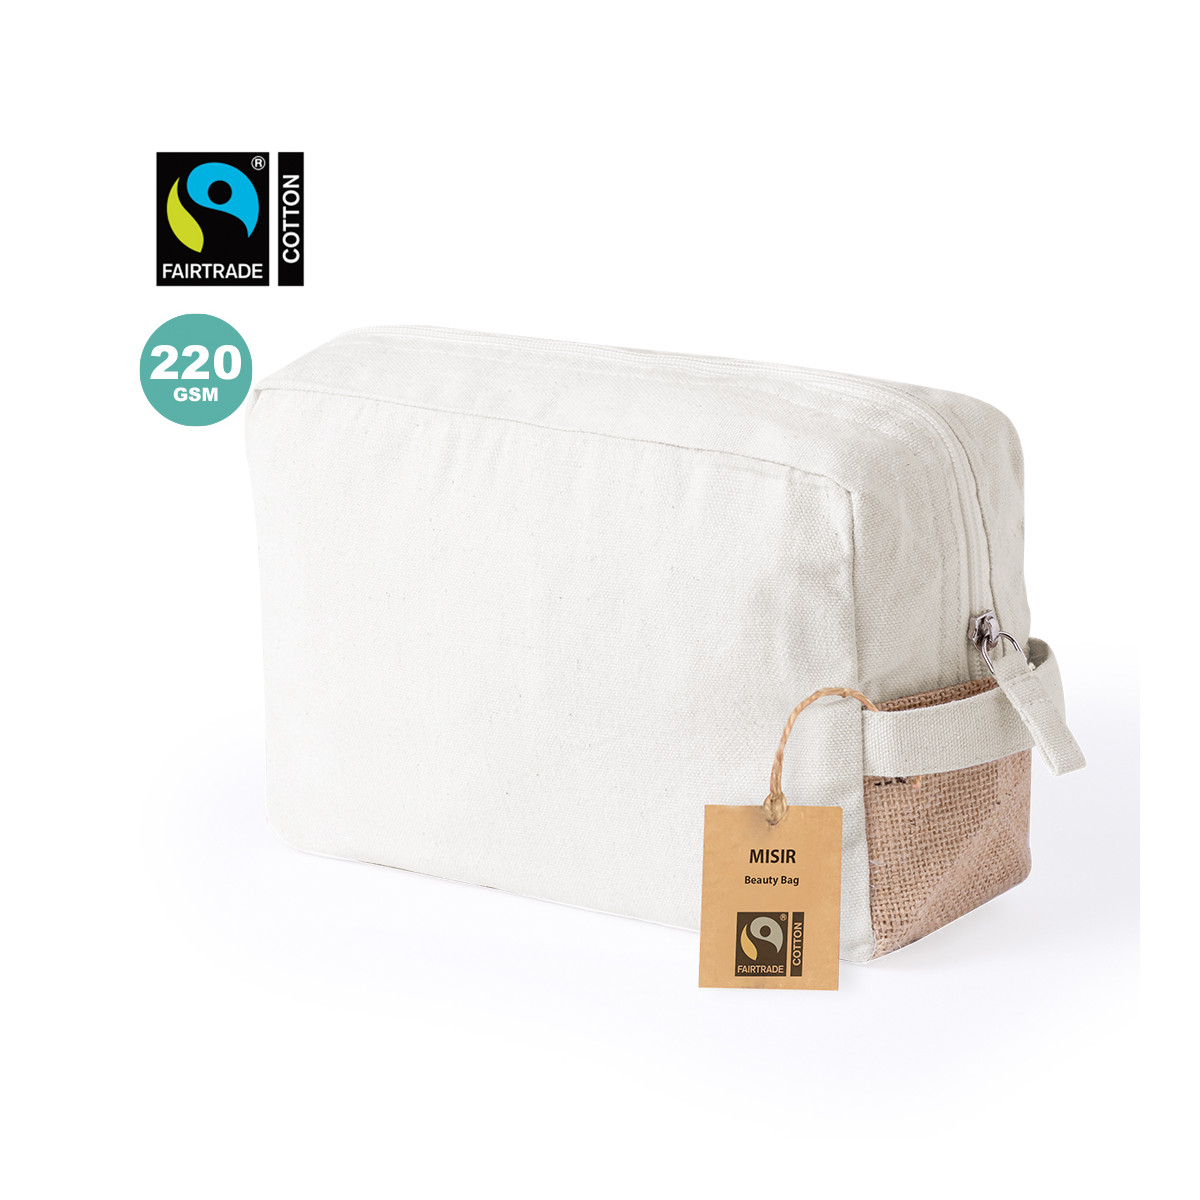 Neceser de algodón 100% Fairtrade con detalles de yute - Neceser Misir Fairtrade